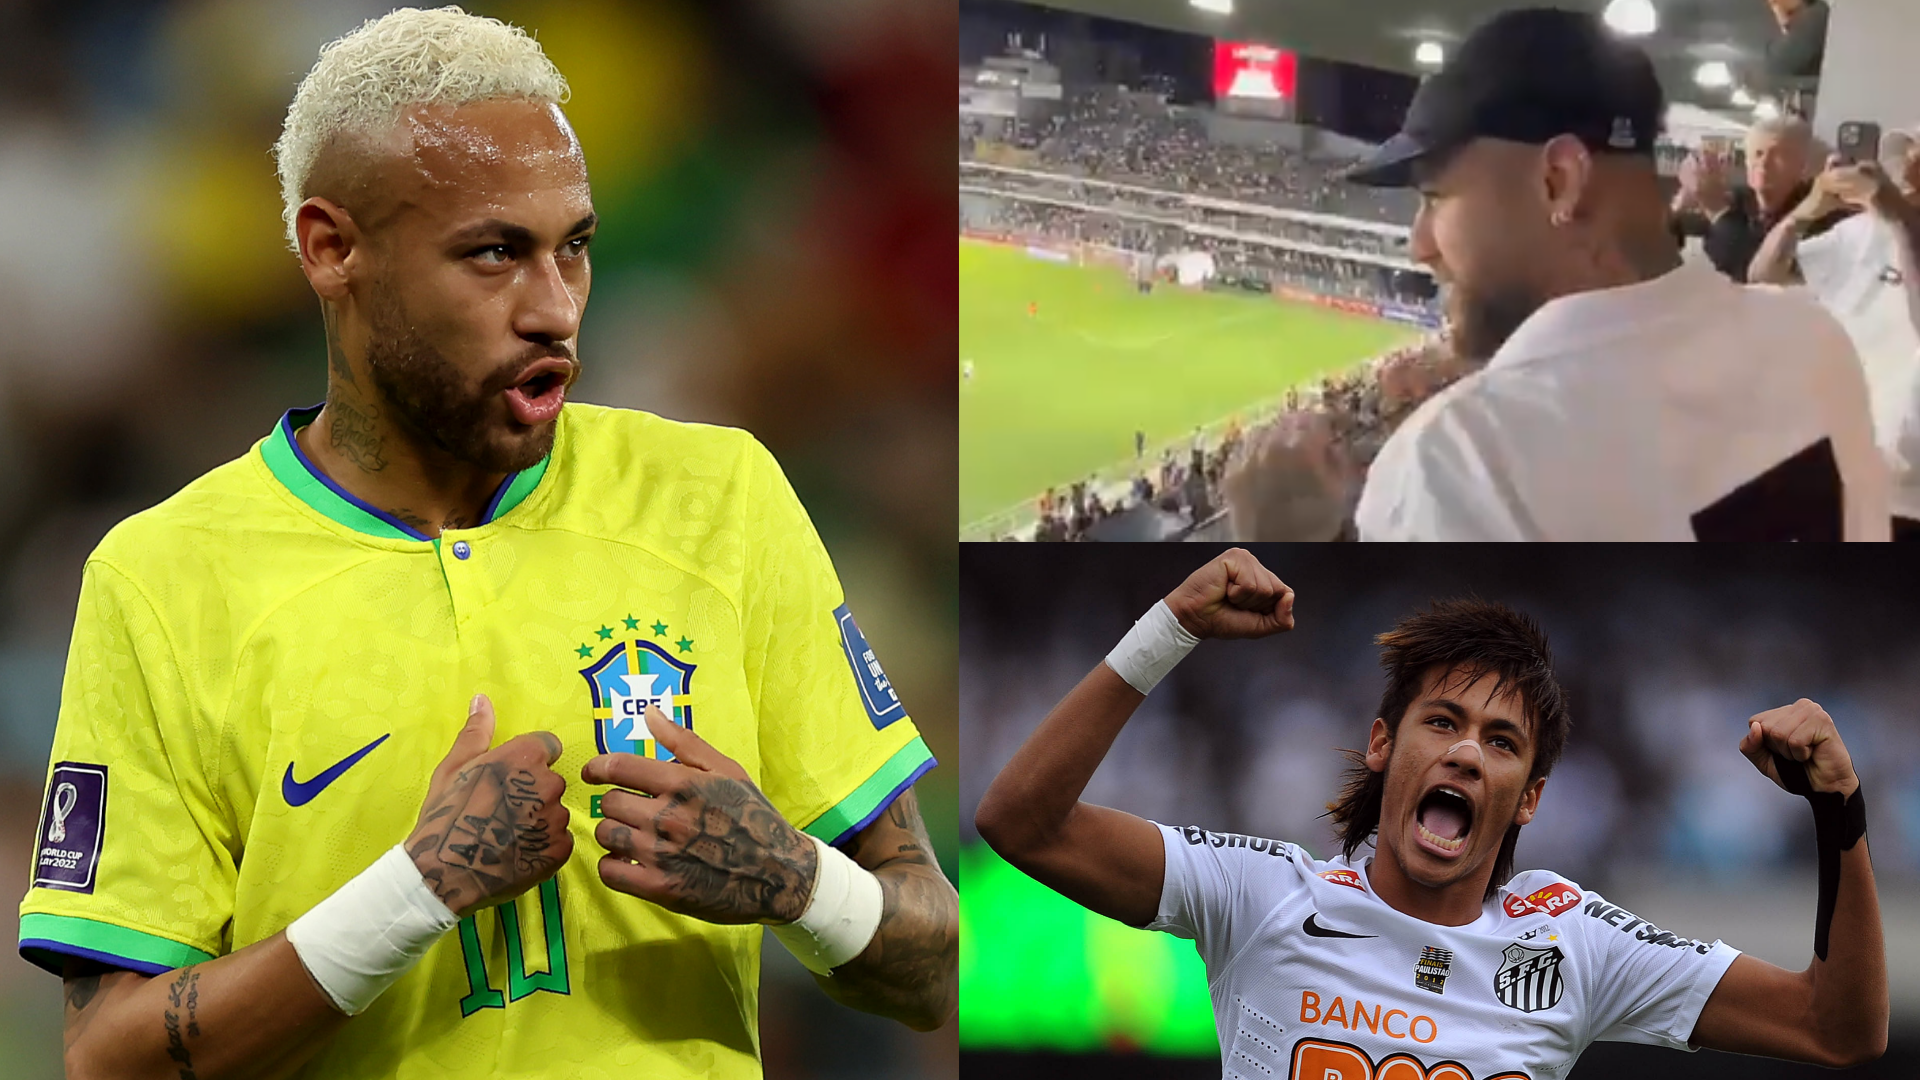 MIRA: ¡Neymar regresa al Santos!  La estrella del PSG envía un mensaje de «Volveré» a su ex club después de ver un partido en Brasil